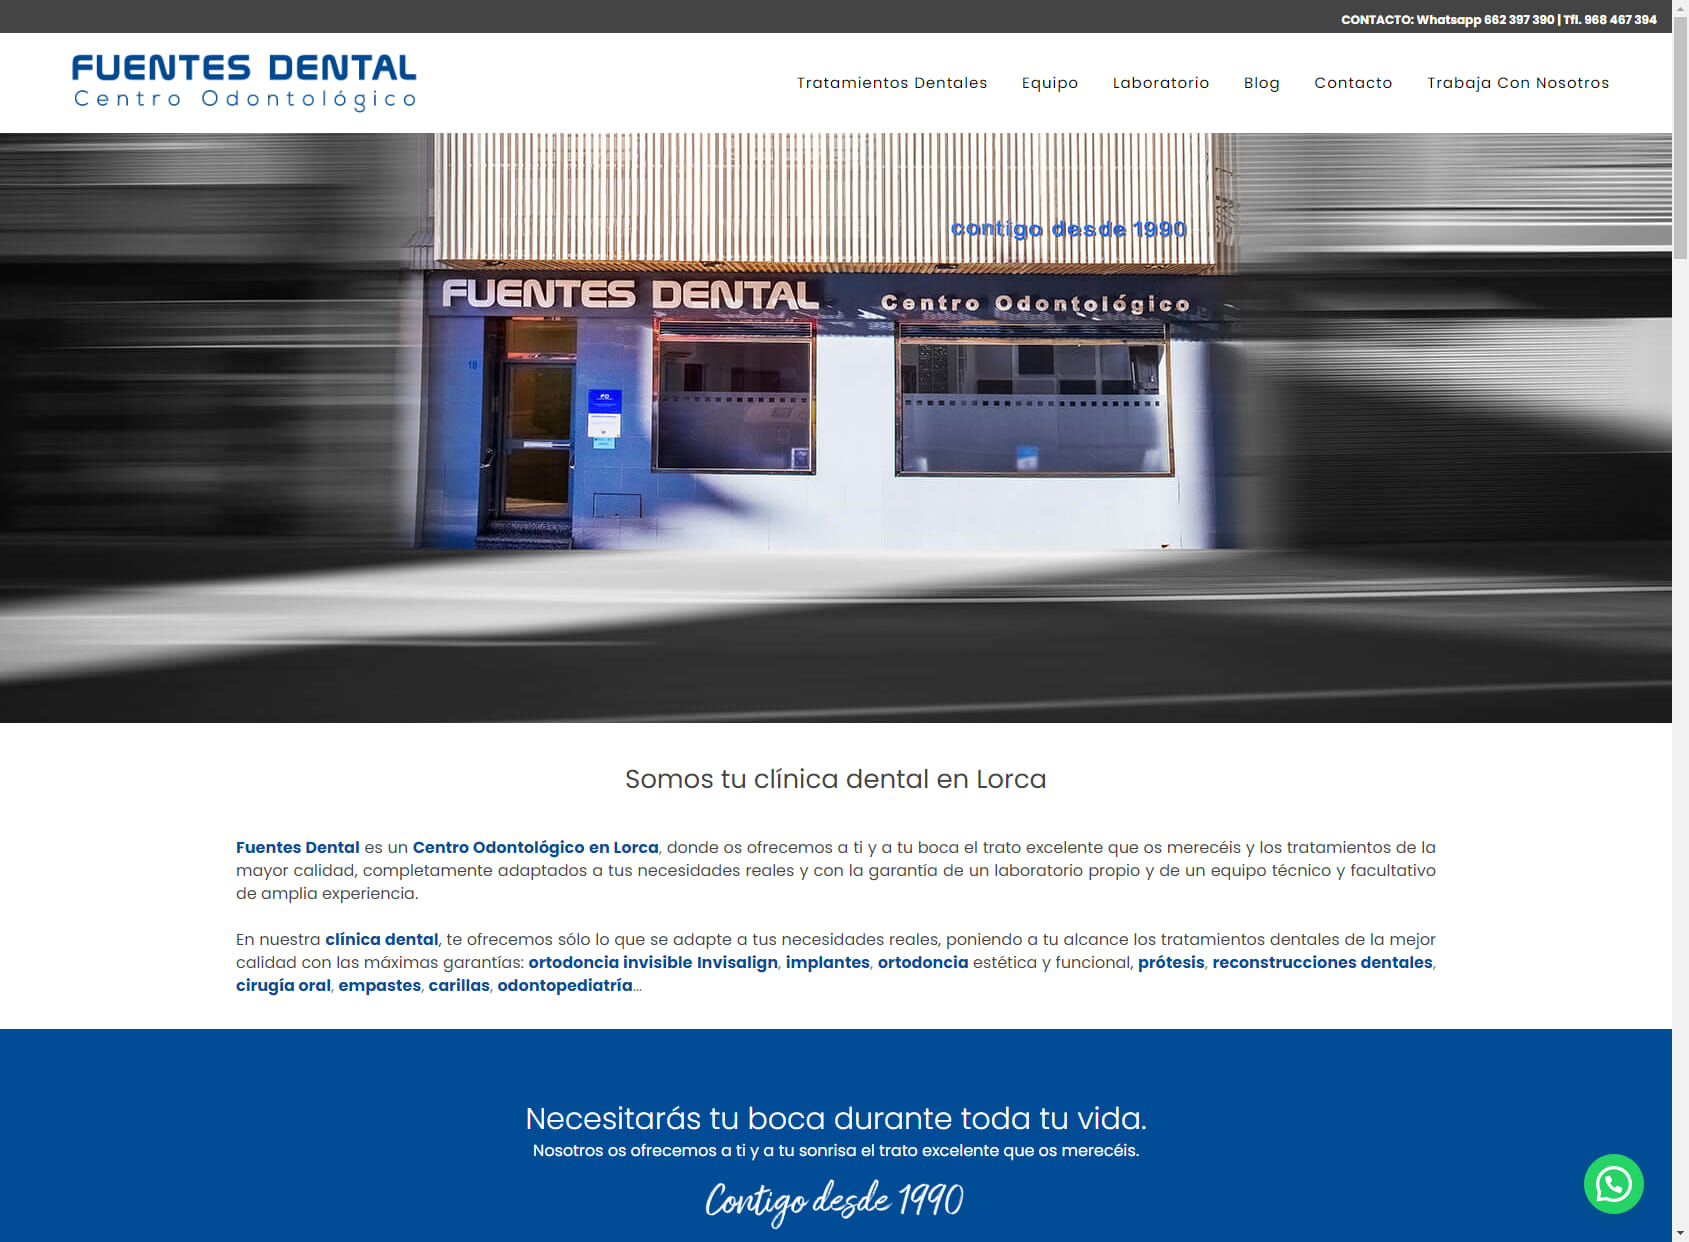 Clínica Fuentes Dental - Centro Odontológico